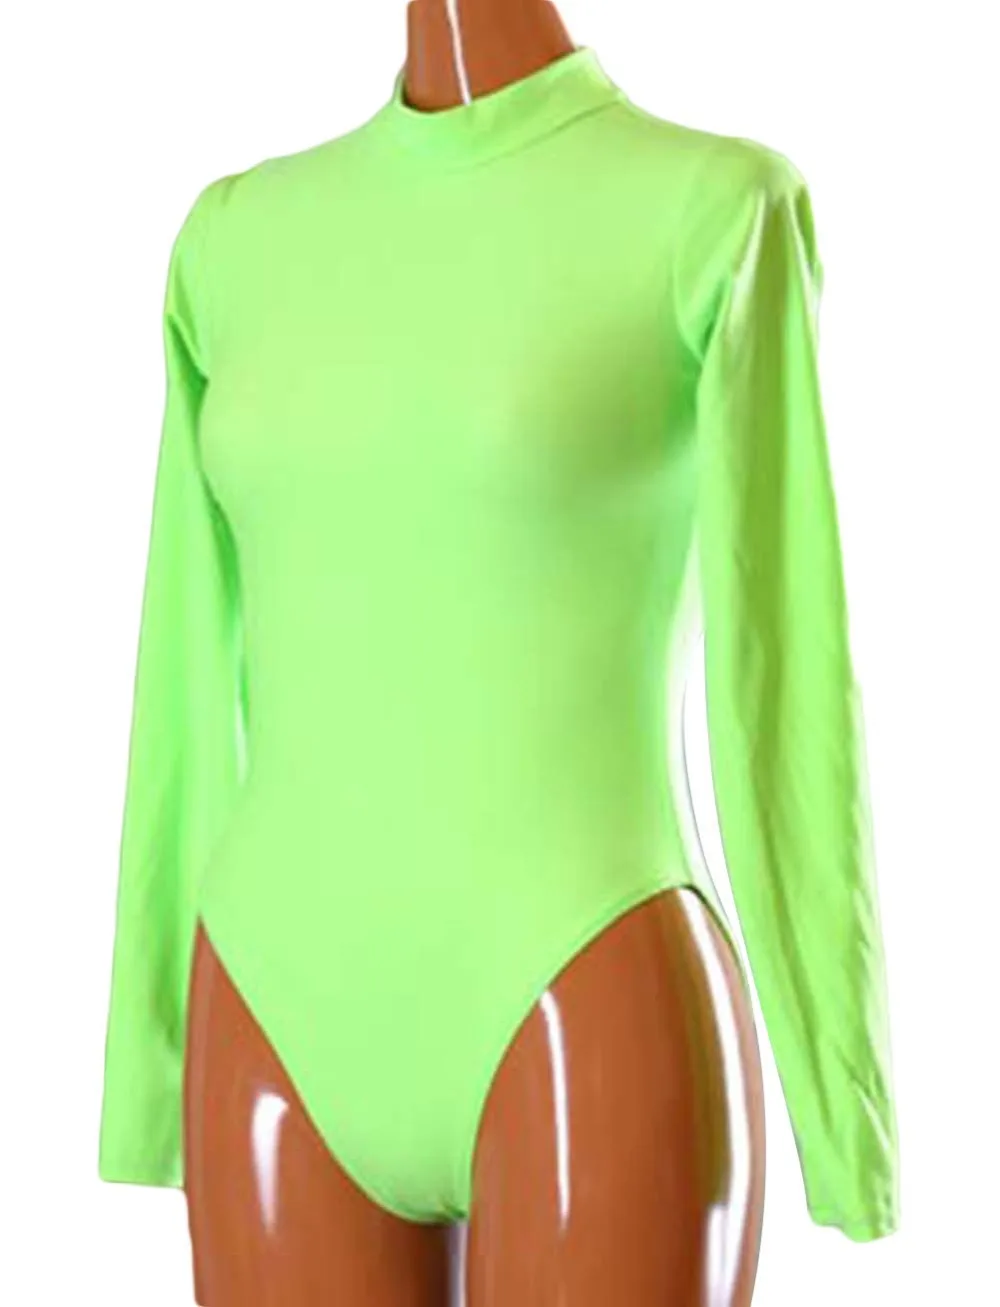 DHL сексуальный взрослый лайкра спандекс облегающий костюм Цельный купальник для акробатики 8 цветов для мероприятий Хэллоуин Вечерние